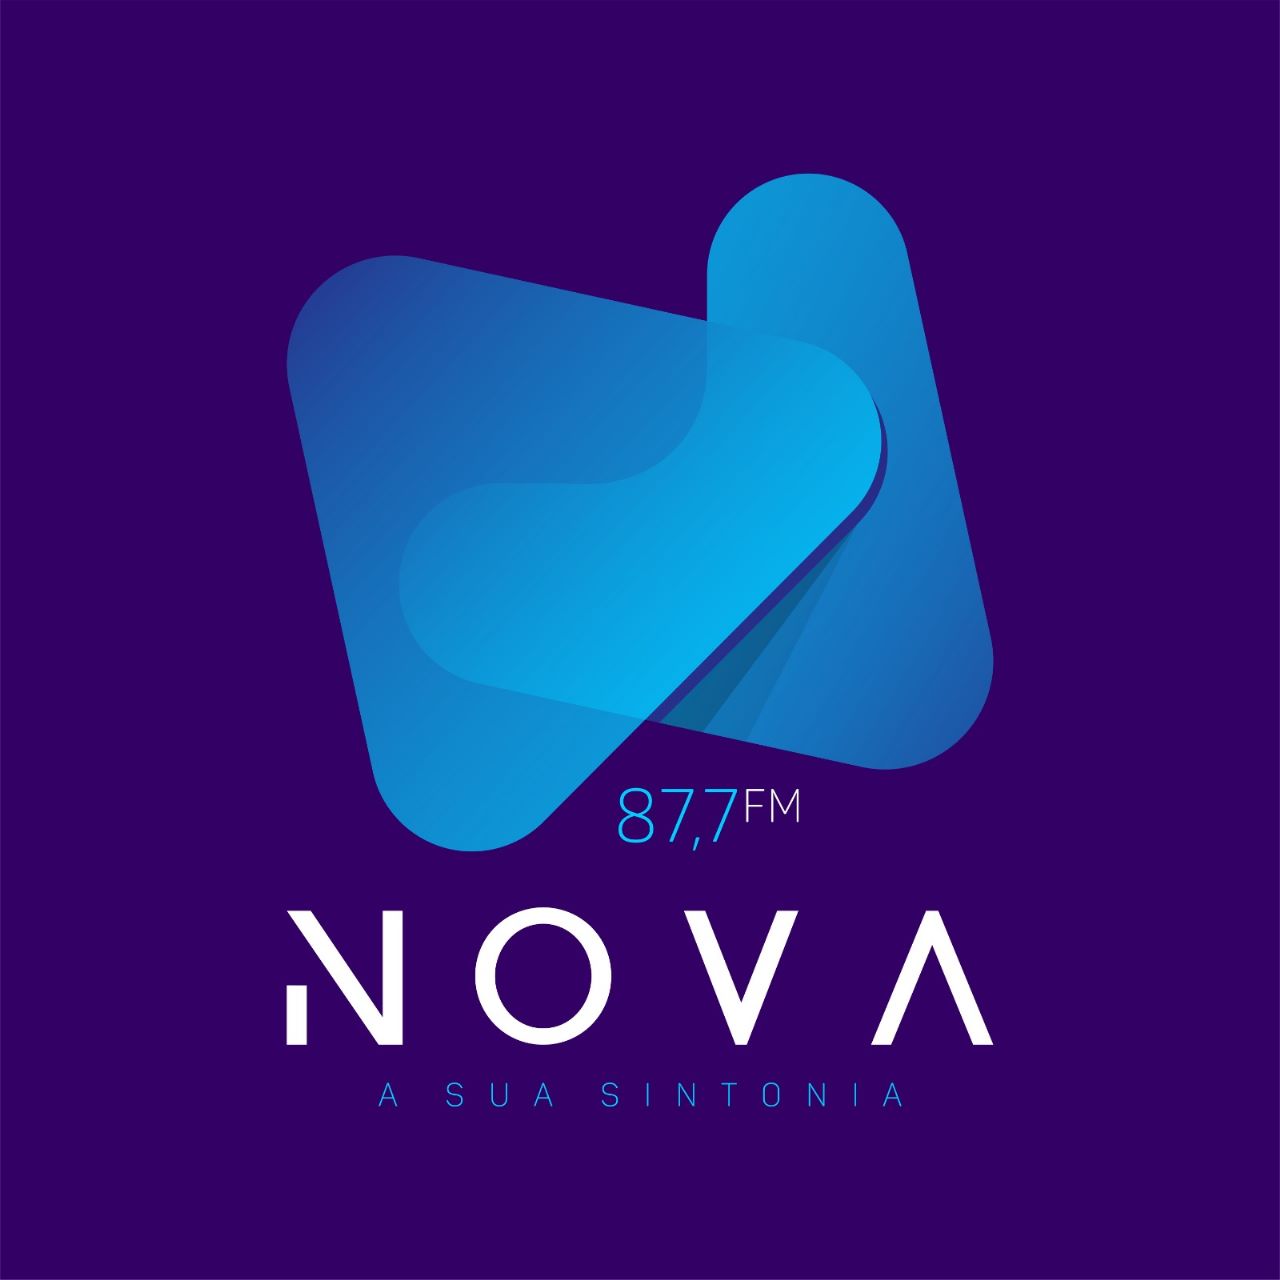 Nova FM 87,7